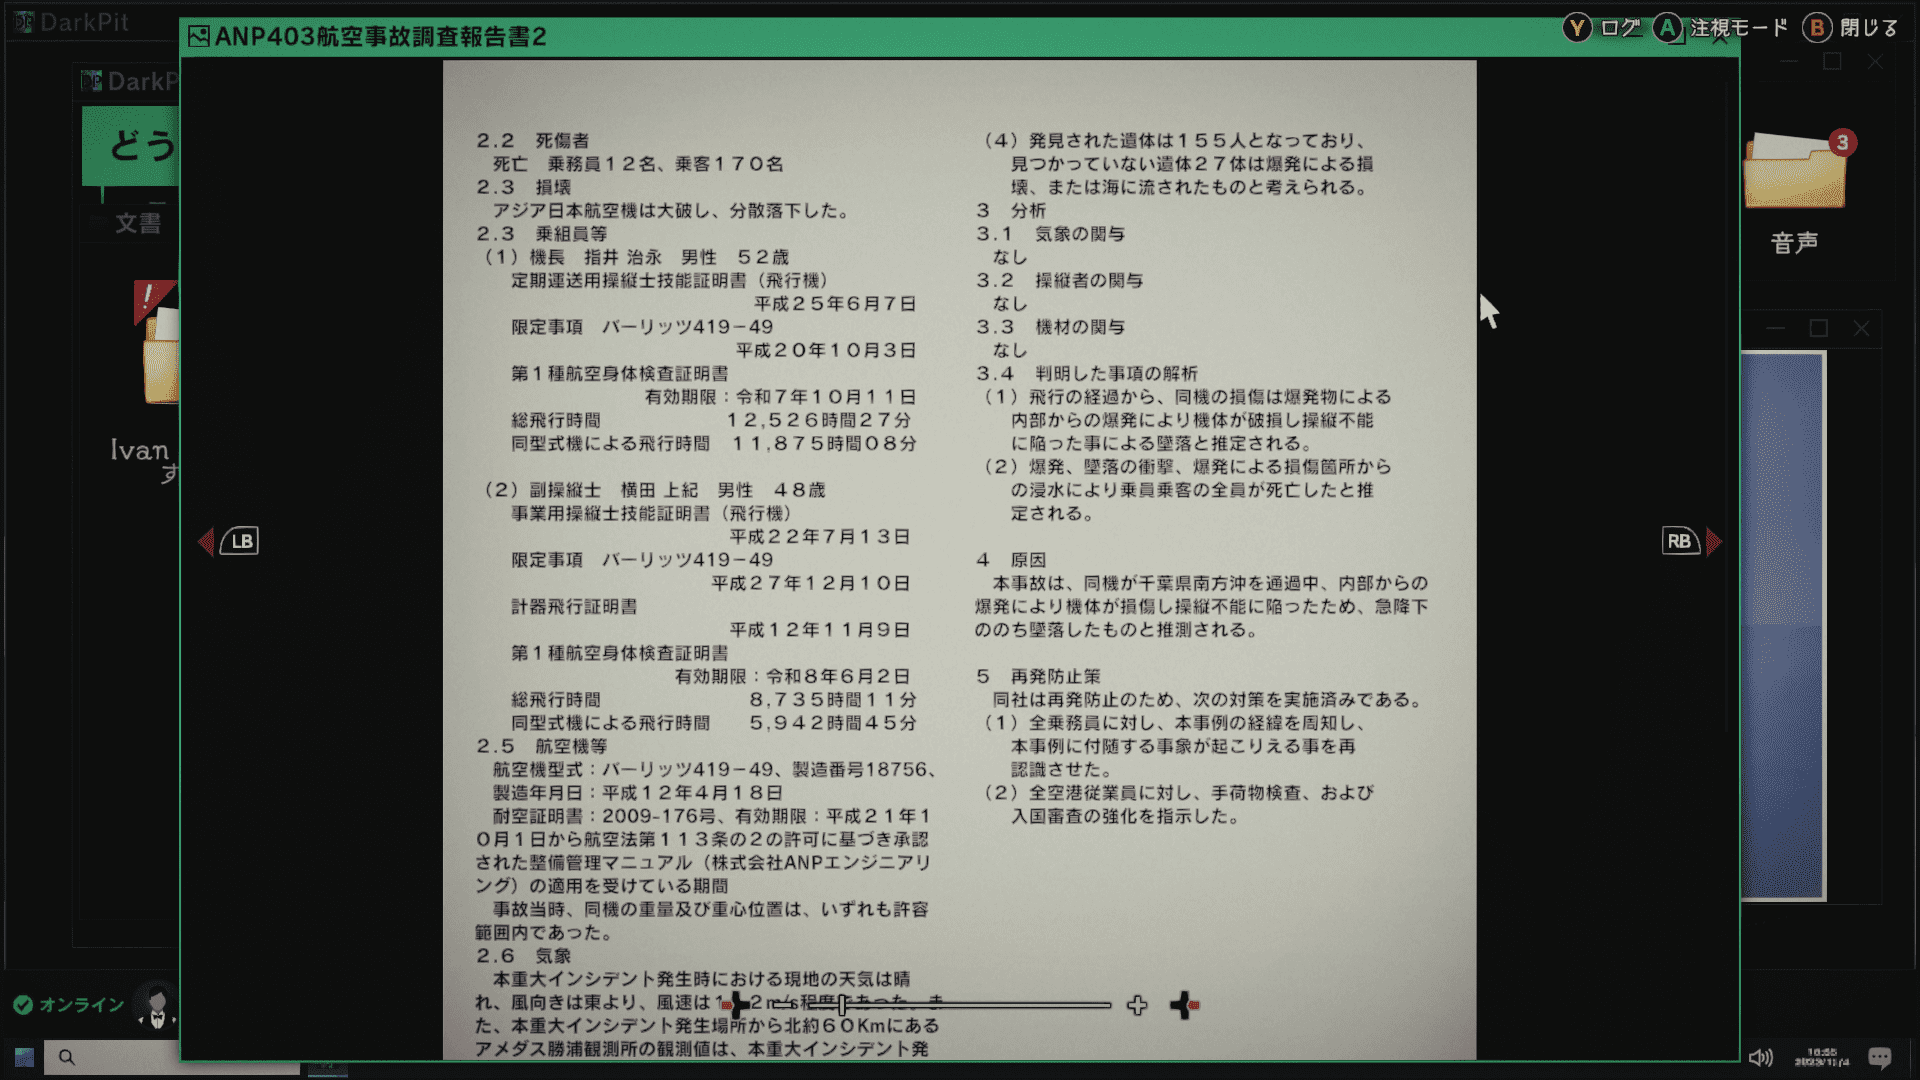 薄暗い部屋でひたすら証拠品を分析して事件の手がかりを集める『東京サイコデミック』が“ガチ”な科学捜査シミュレーションゲームだった_015